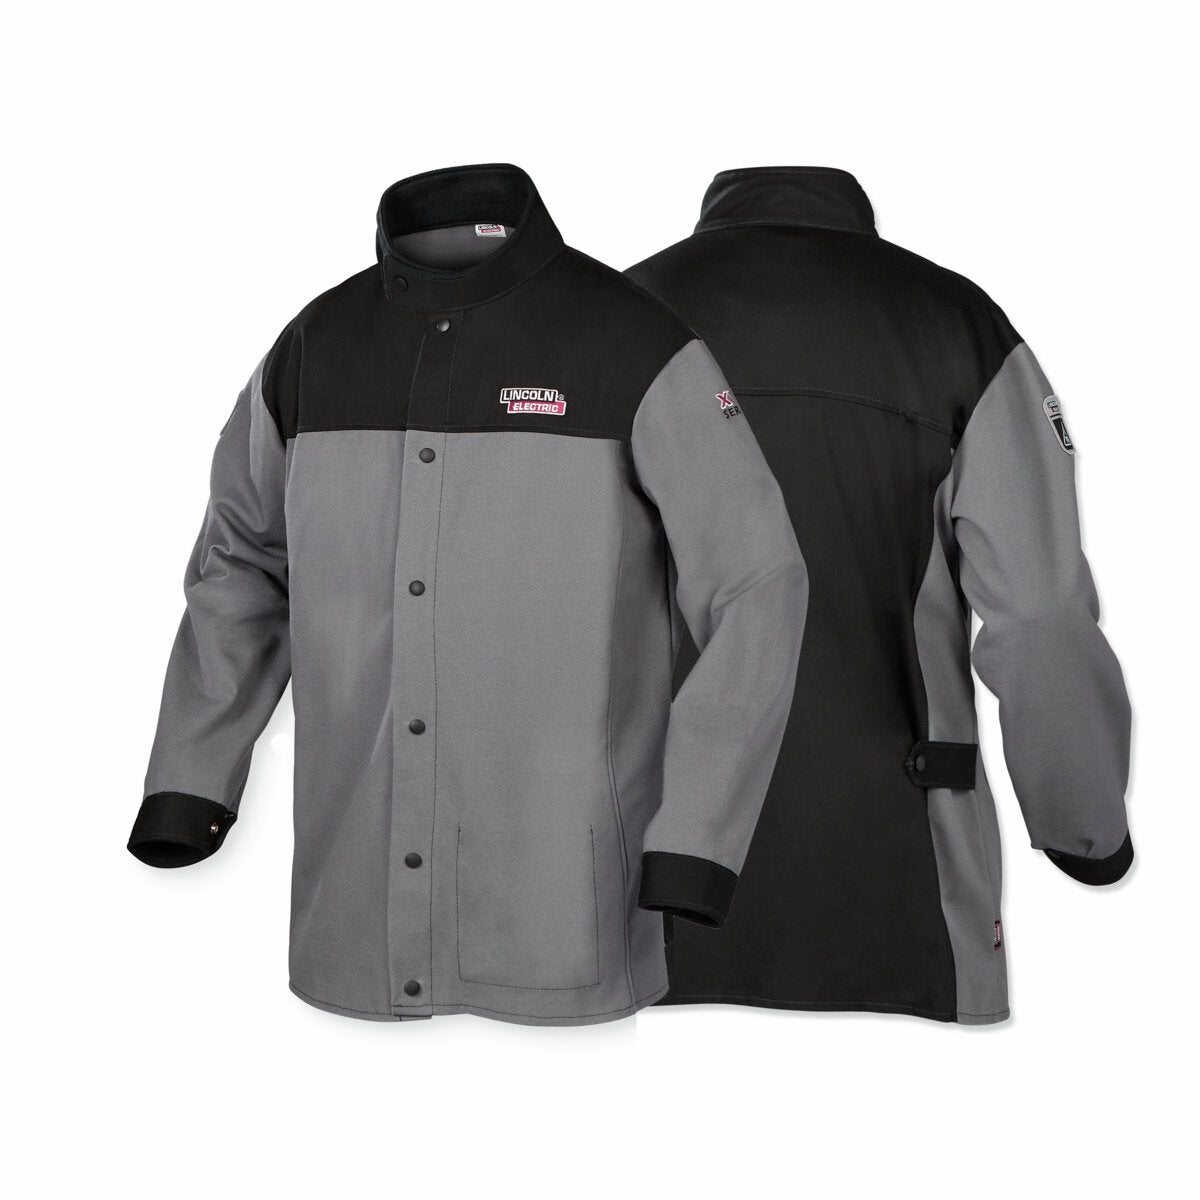 XVI Series Industrial FR Welding Jacket - X-Large